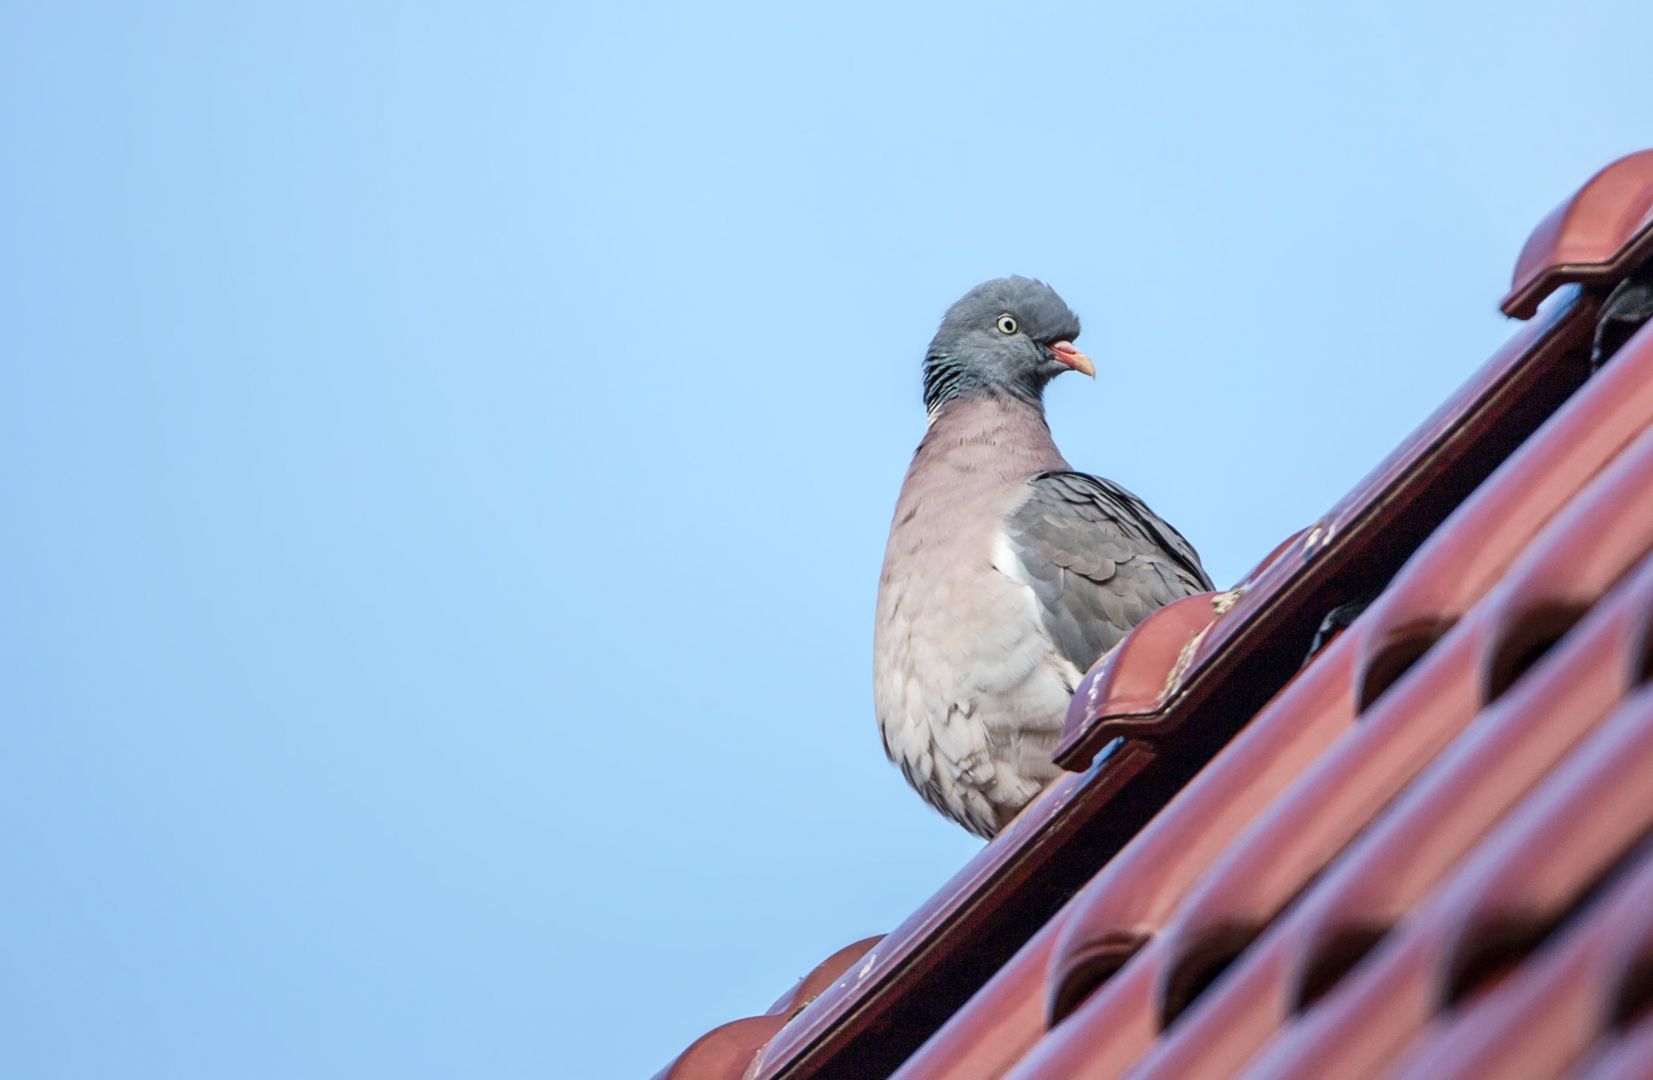 Ptaki niszczą pokrycia dachowe, zanieczyszczają rynny, gzymsy i elewację, co ma duży wpływ na trwałość tych elementów. Ponadto są nosicielami chorób, wielu bakterii, a ich upierzenie może powodować alergie. Fot. AdobeStock